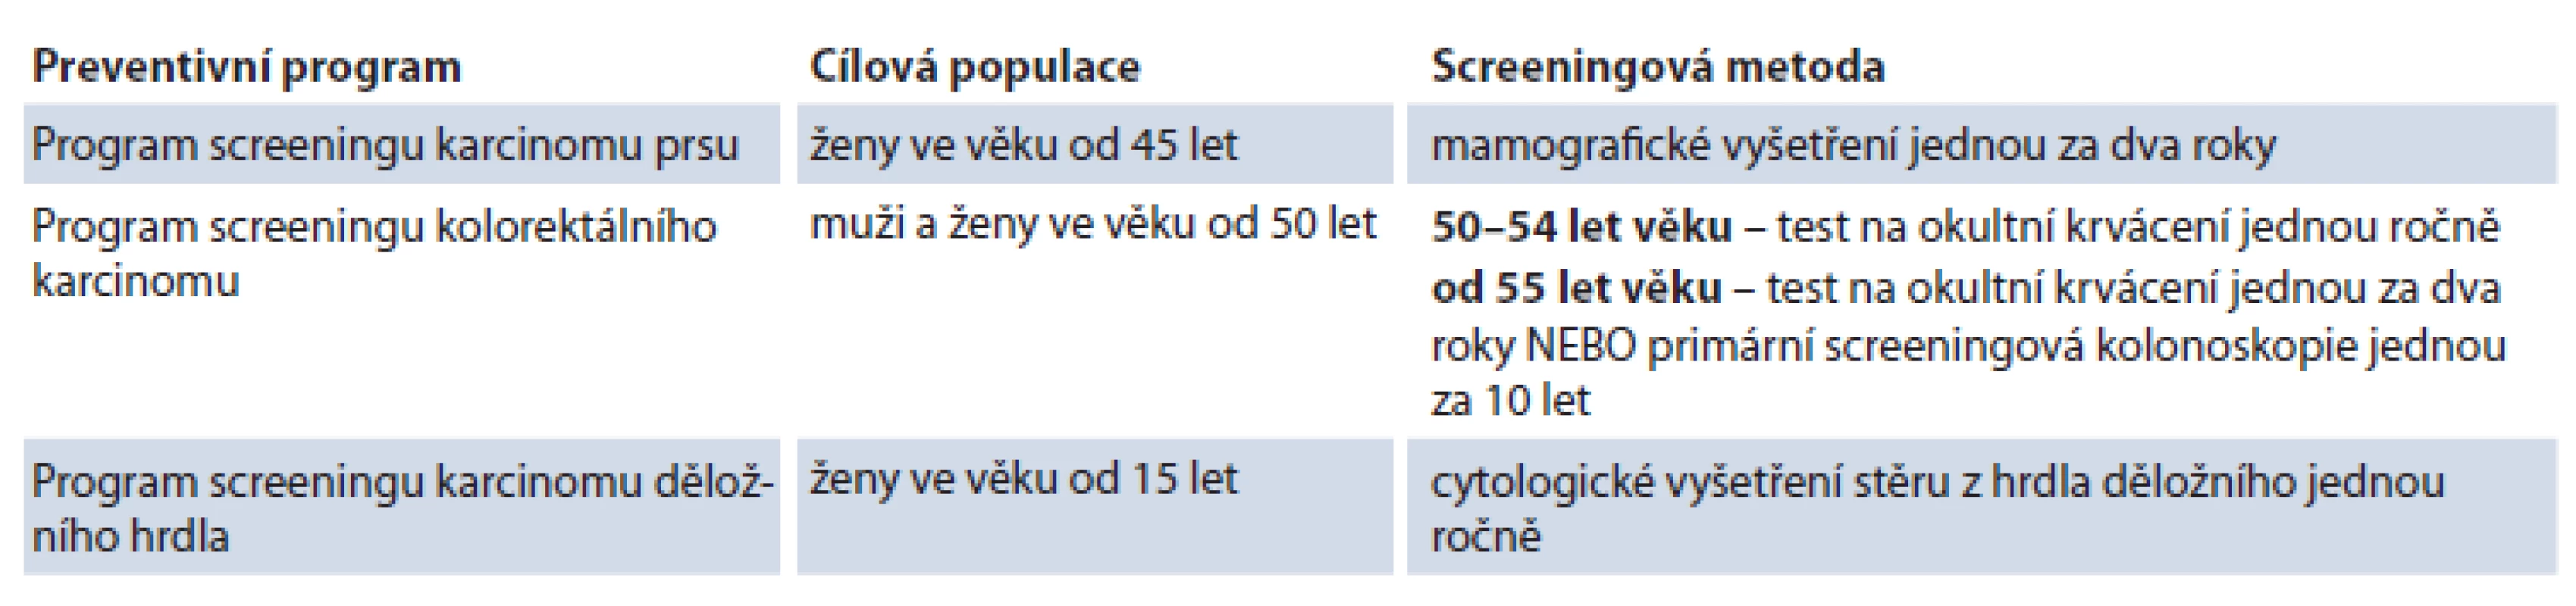 Programy pro screening nádorových onemocnění dle doporučení Rady EU a jejich dostupnost v ČR.